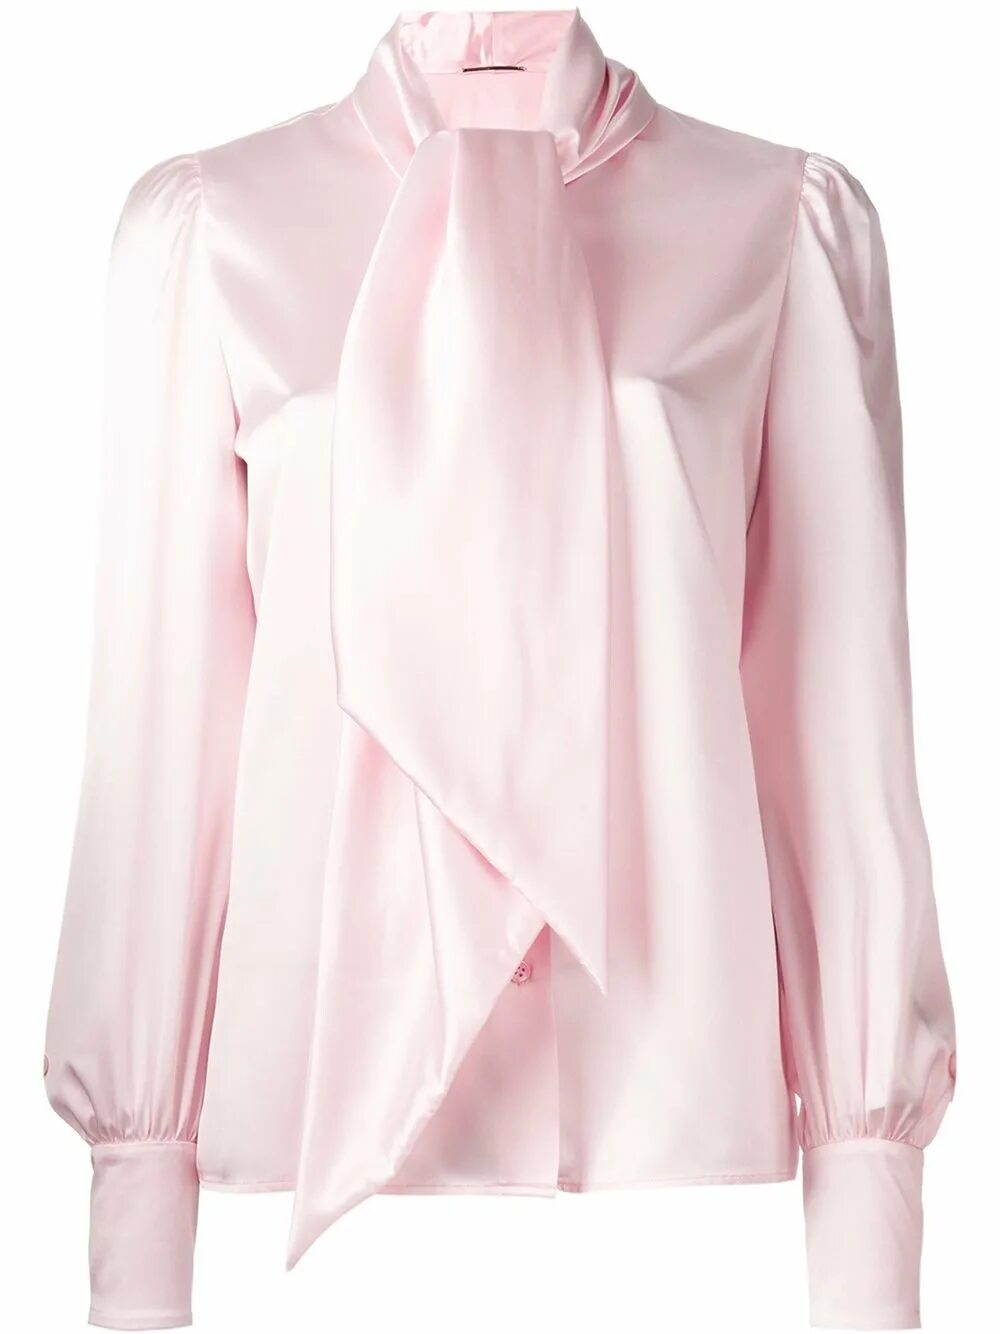 Женские блузки розовые. Блузка Saint Laurent bf65606628y3a838. Шёлковая блузка Ланвин. Сен Лоран блузка. Ив сен Лоран шелковая блуза.